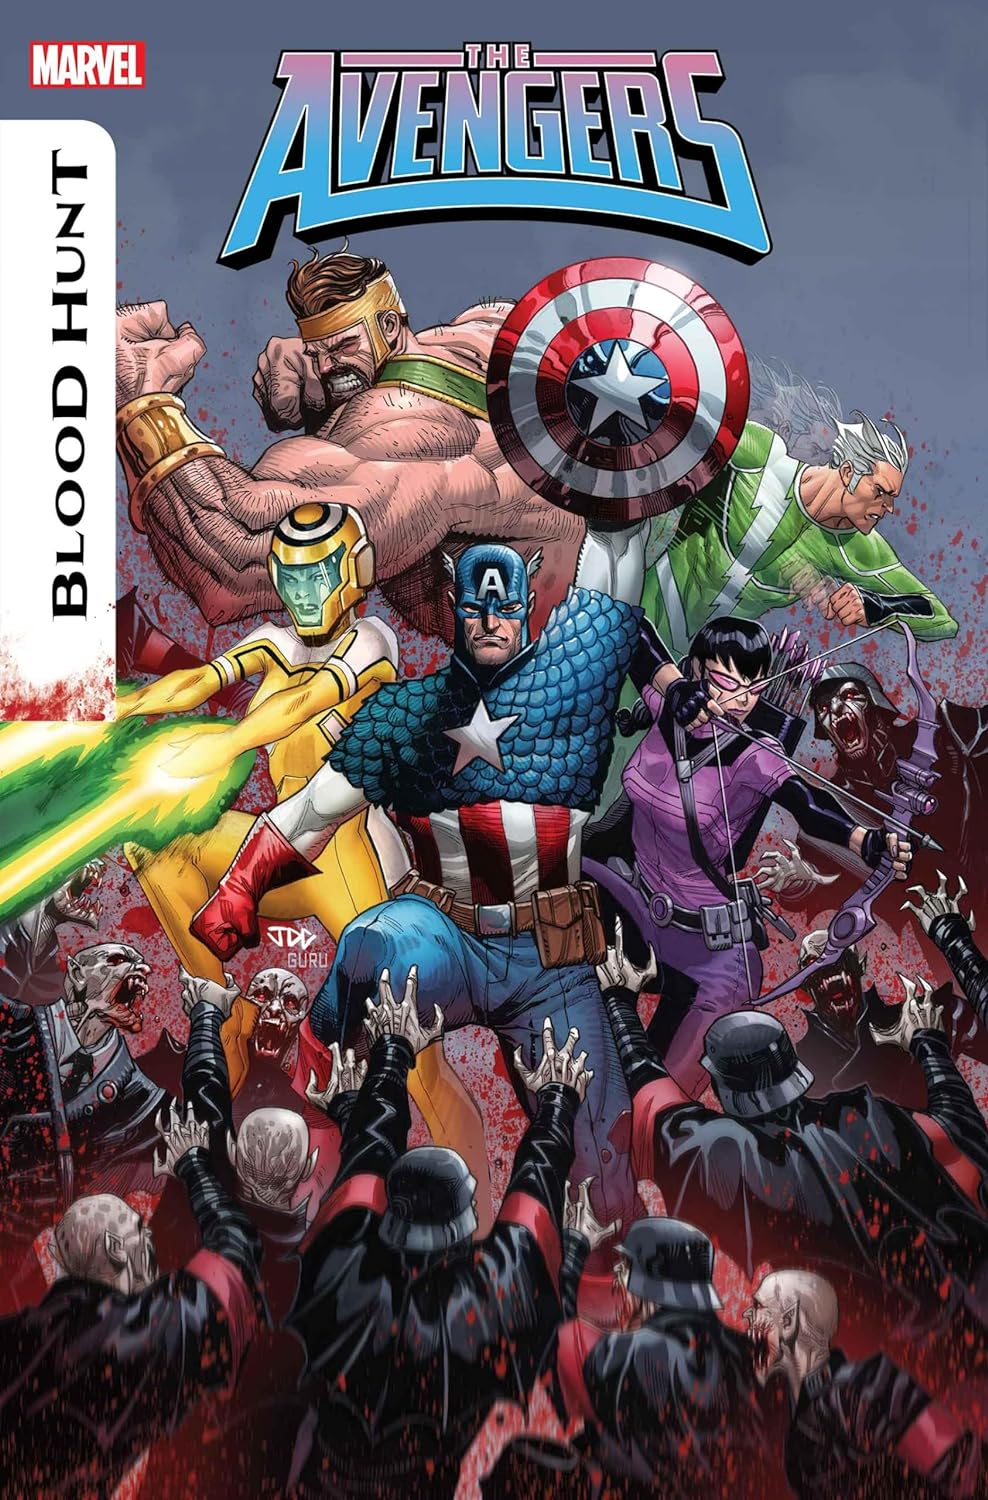 Avengers #14 cover art